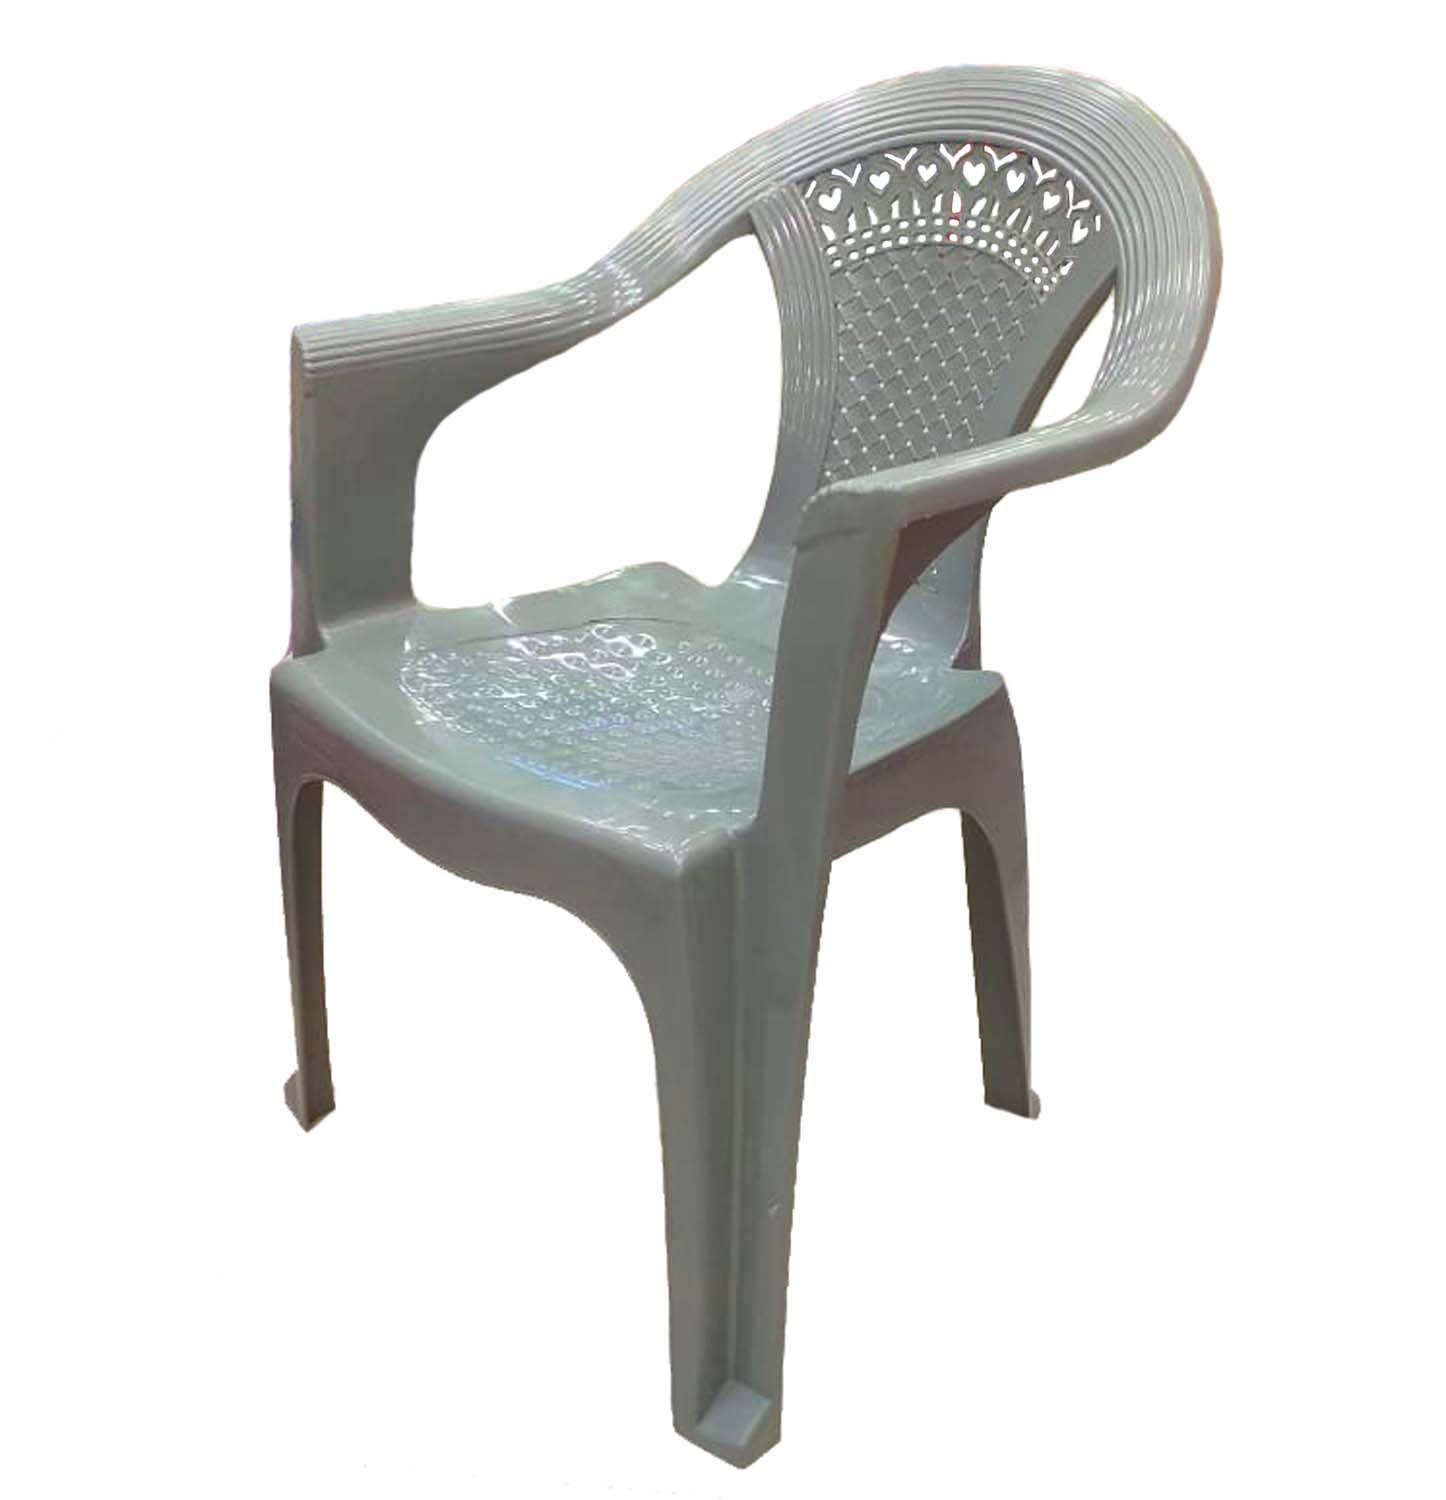 Plastic Chair Indoor-outdoor Garden Chair - New Italian Style Chair